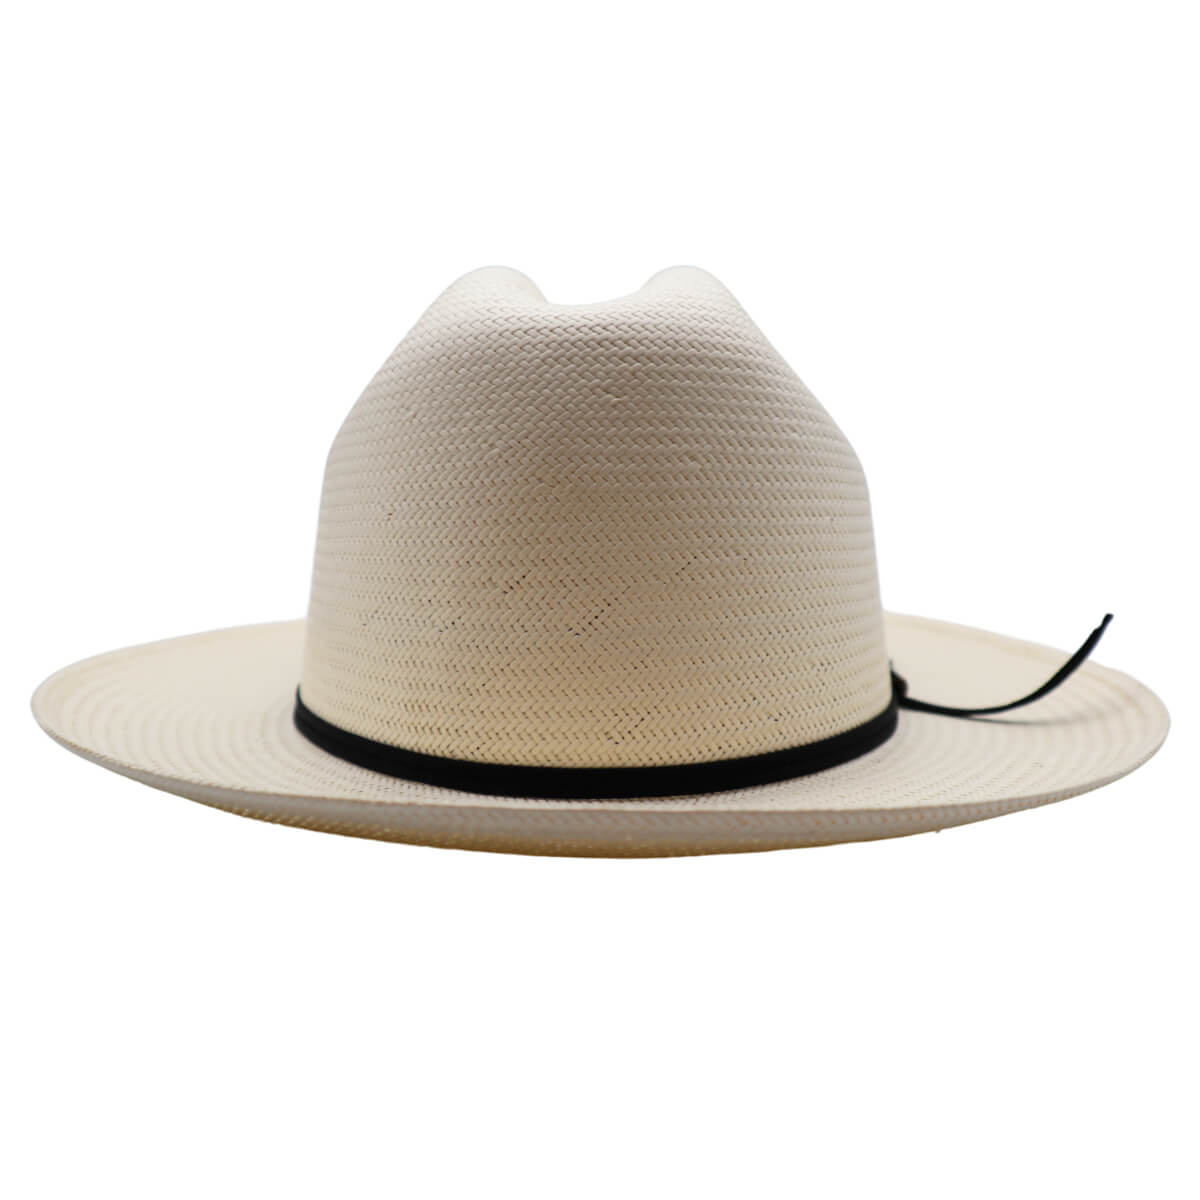 Stetson Open Road Straw Hat